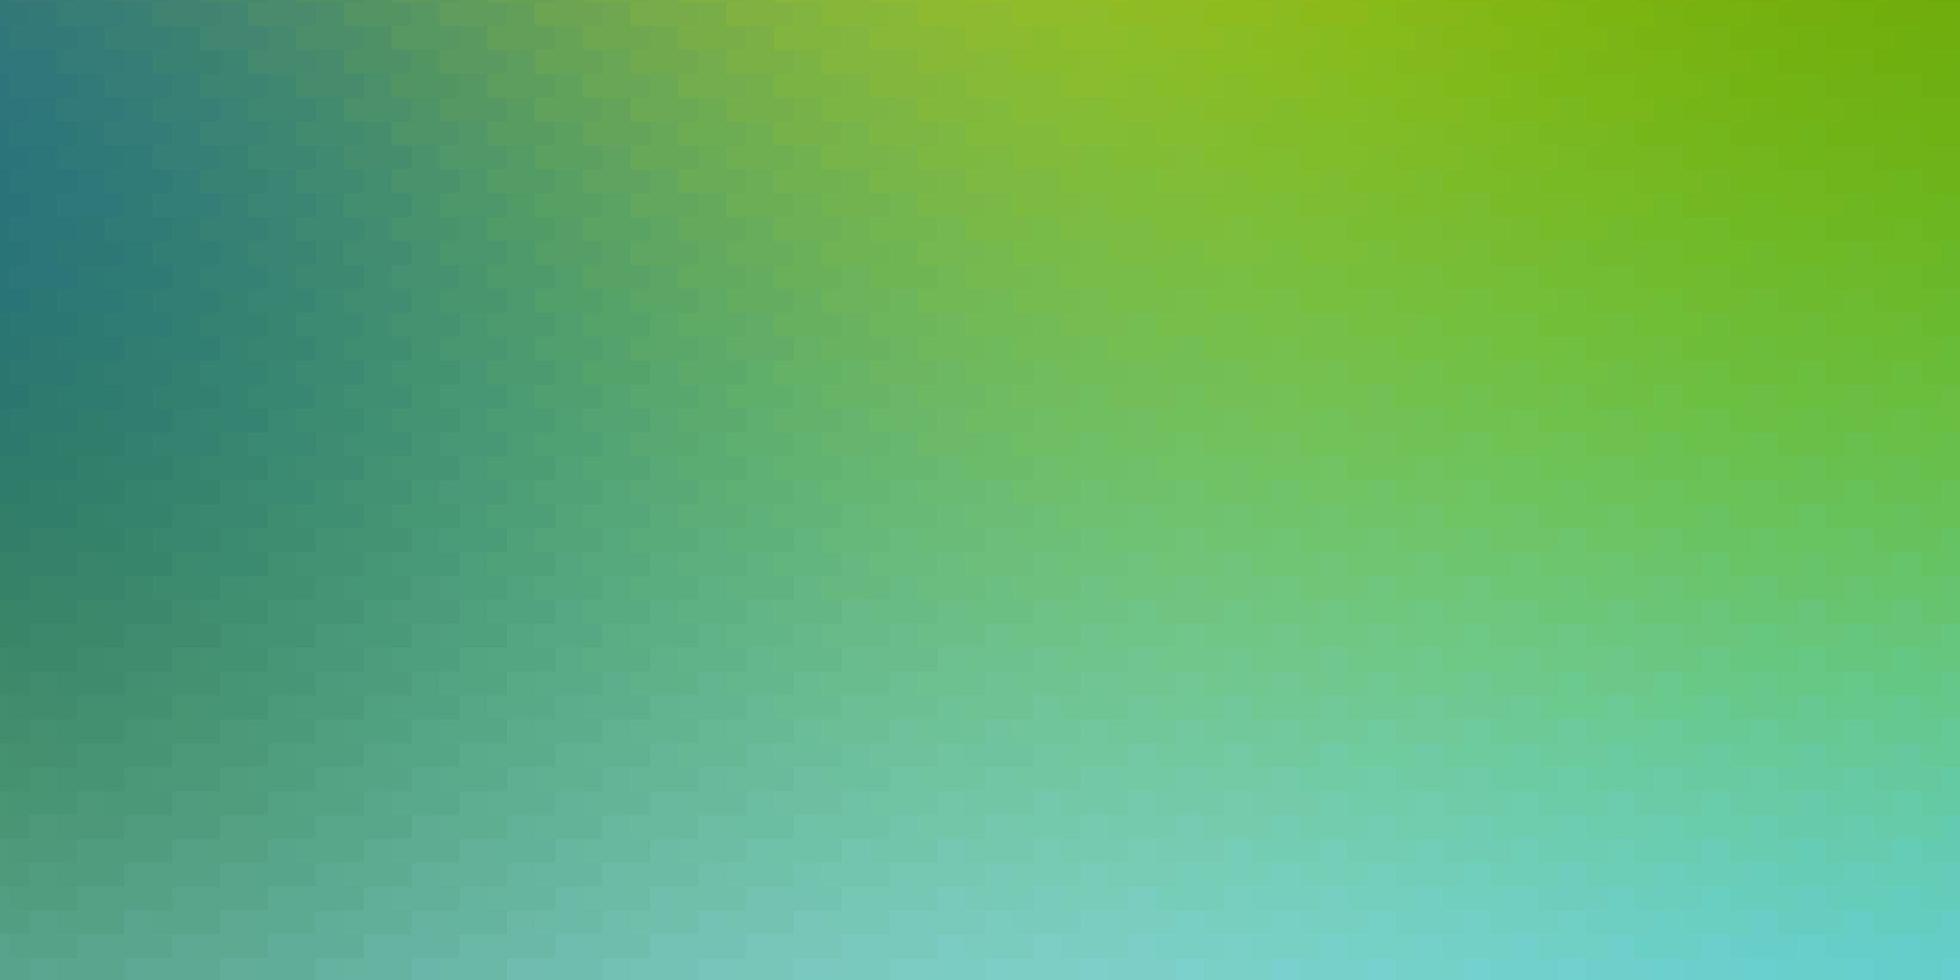 ljusblå, grön vektormall i rektanglar. vektor